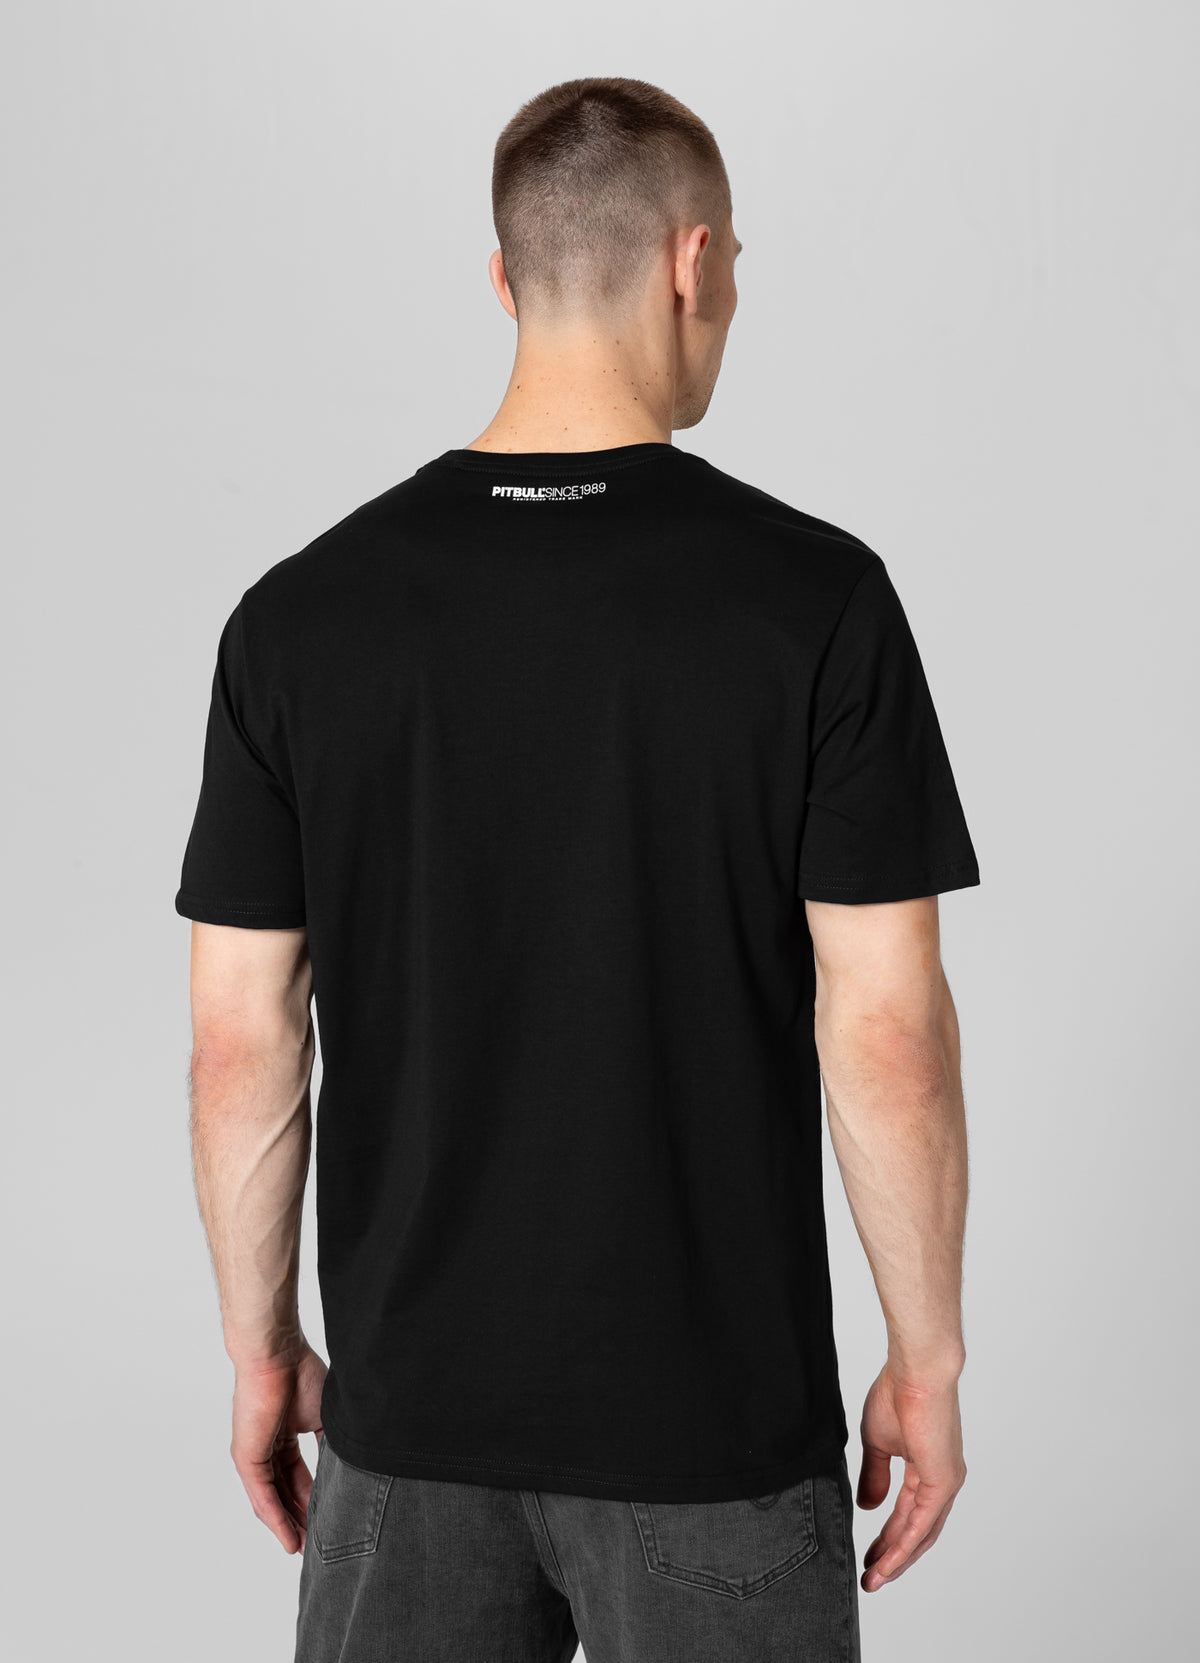 CASINO 3 Lightweight Black T-shirt